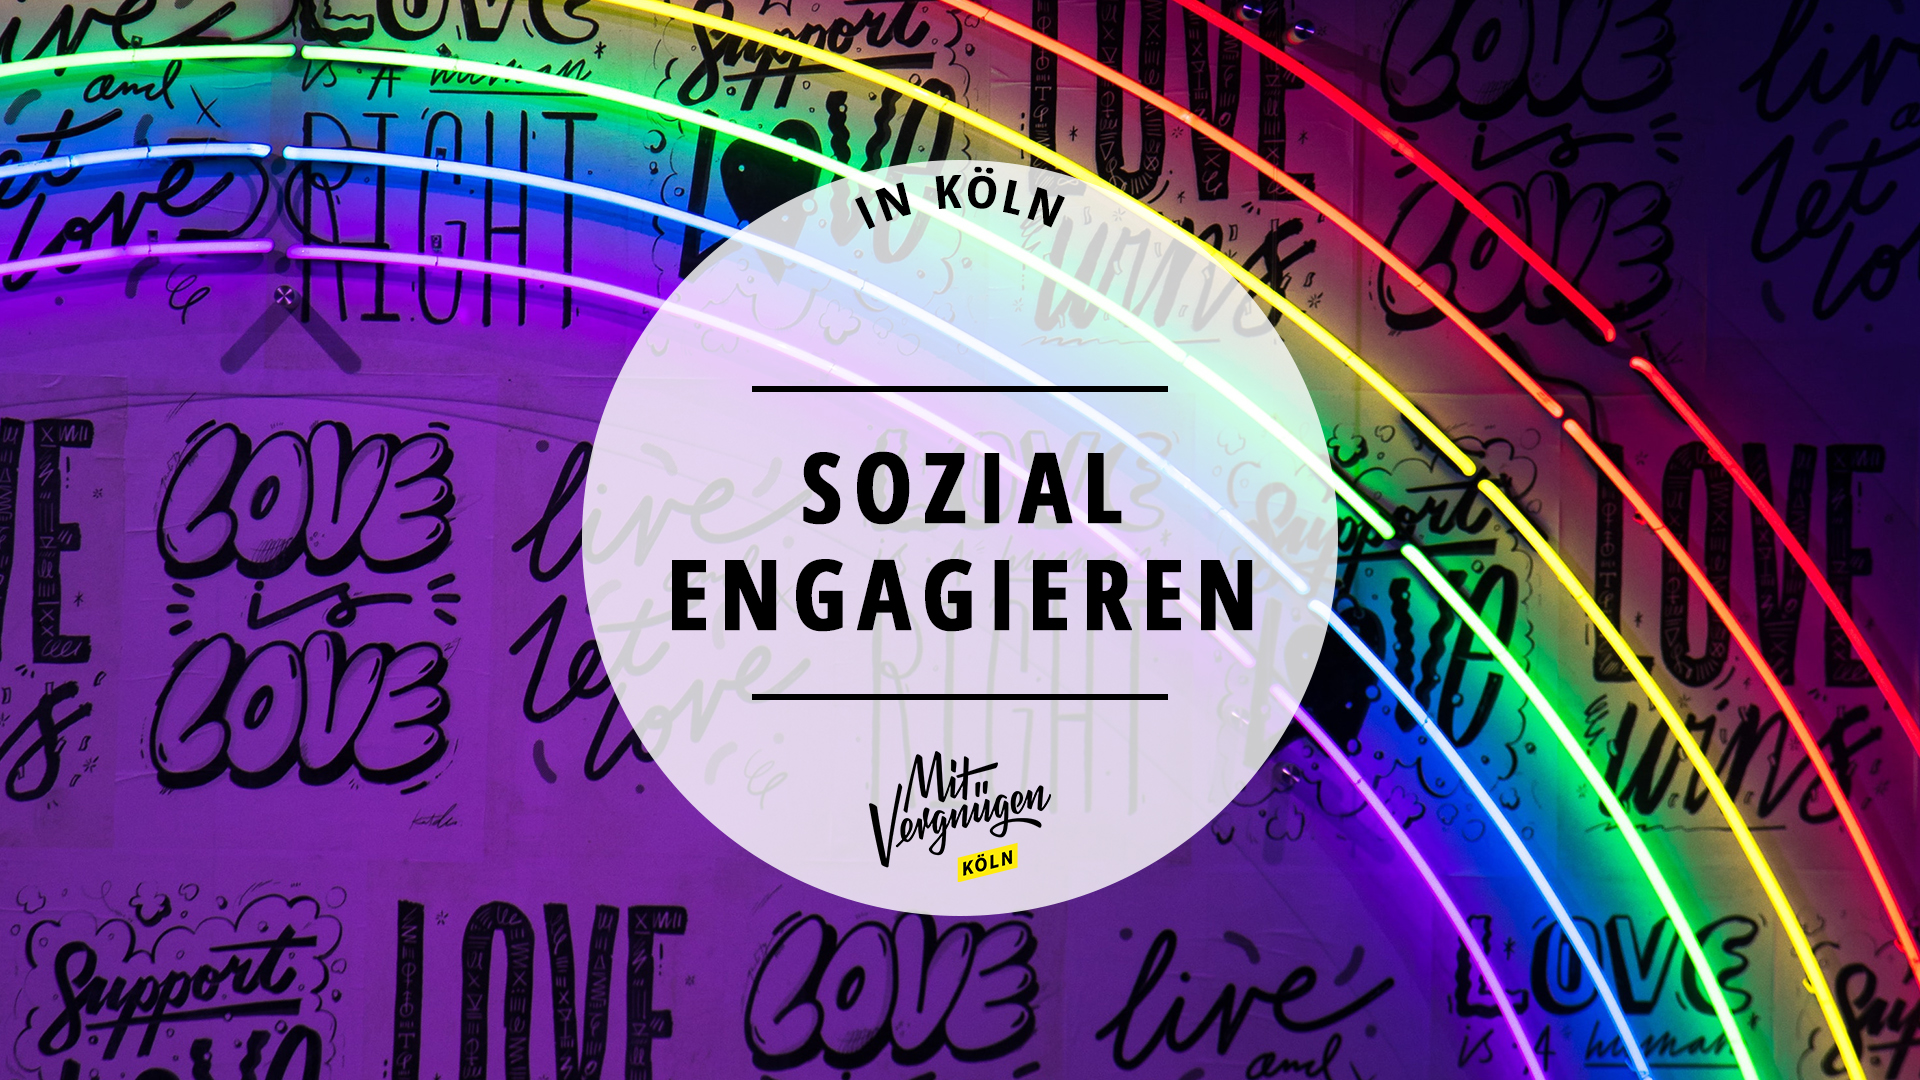 #Mund auf für Toleranz: So könnt ihr euch in Köln sozial engagieren